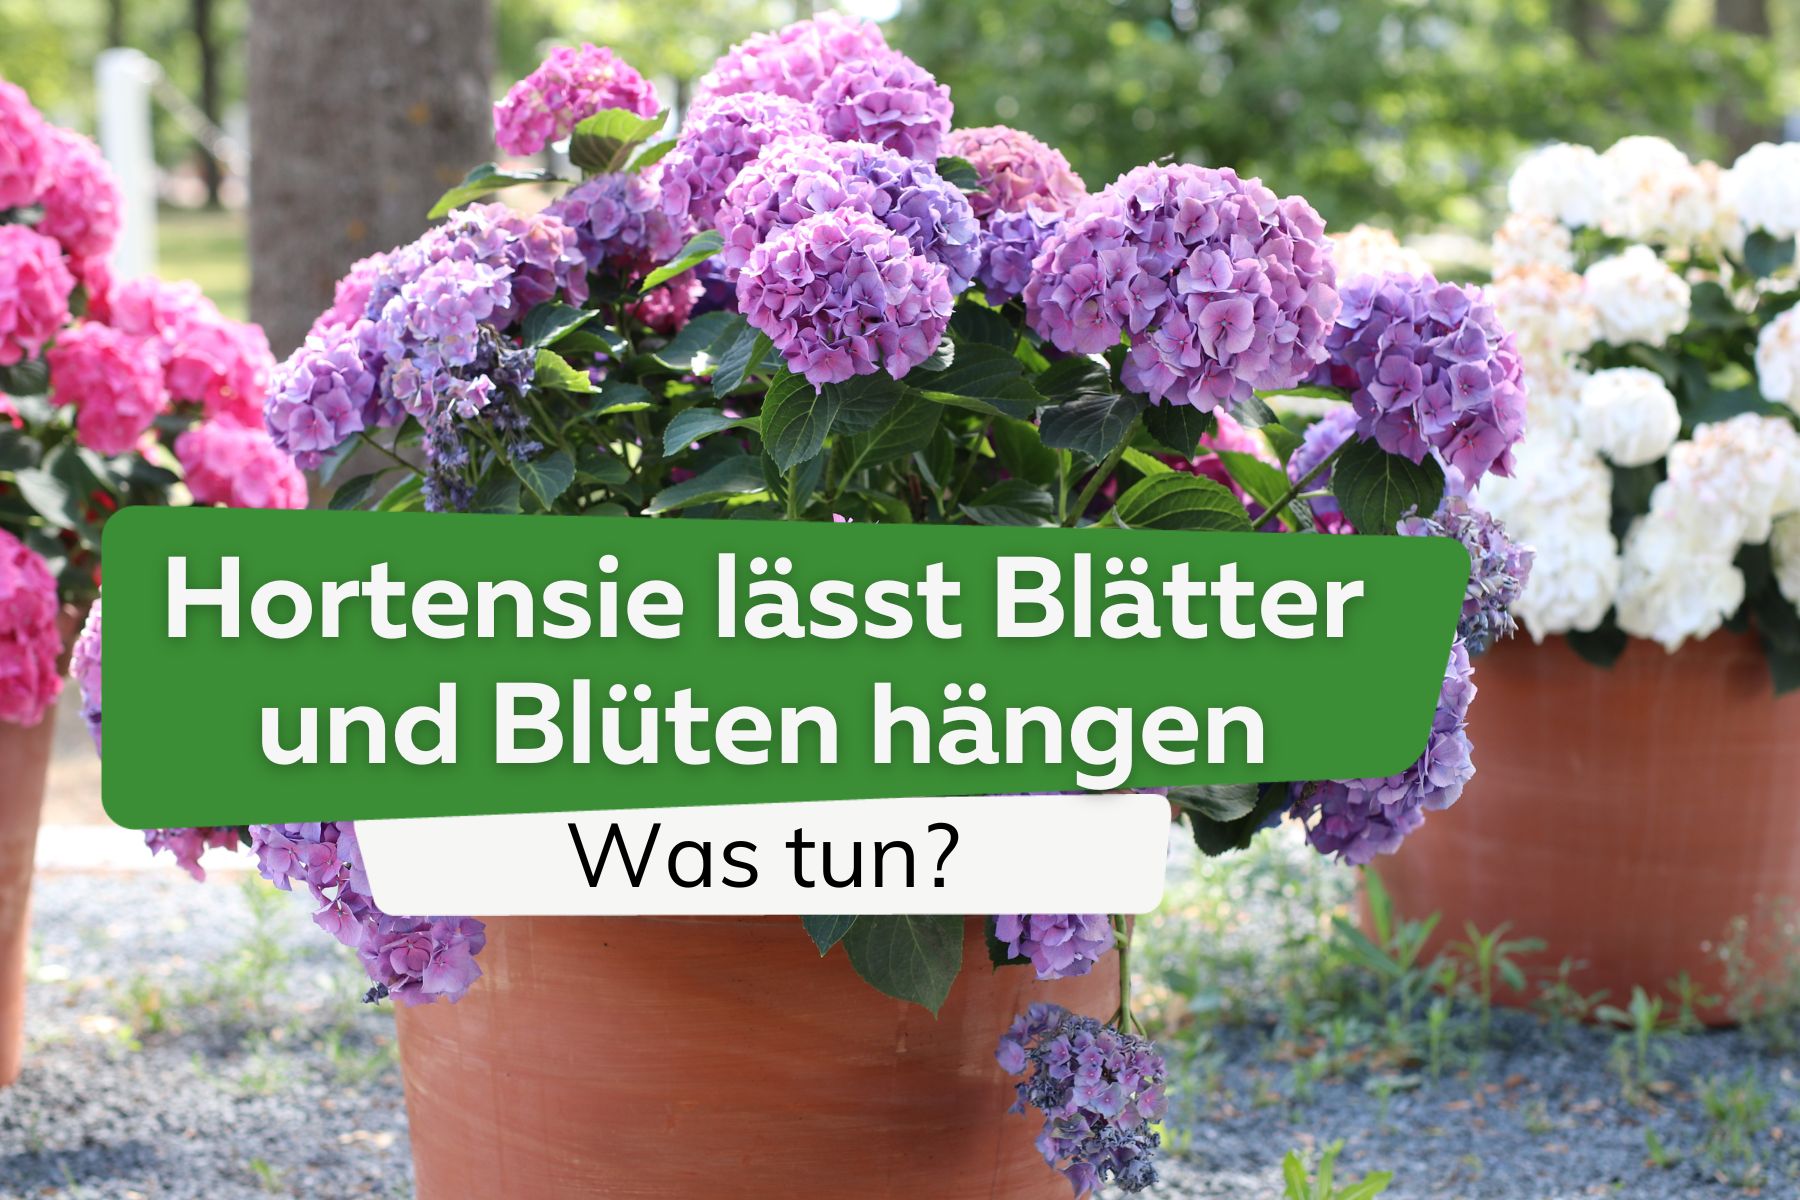 Hortensie lässt Blätter und Blüten hängen: was tun?